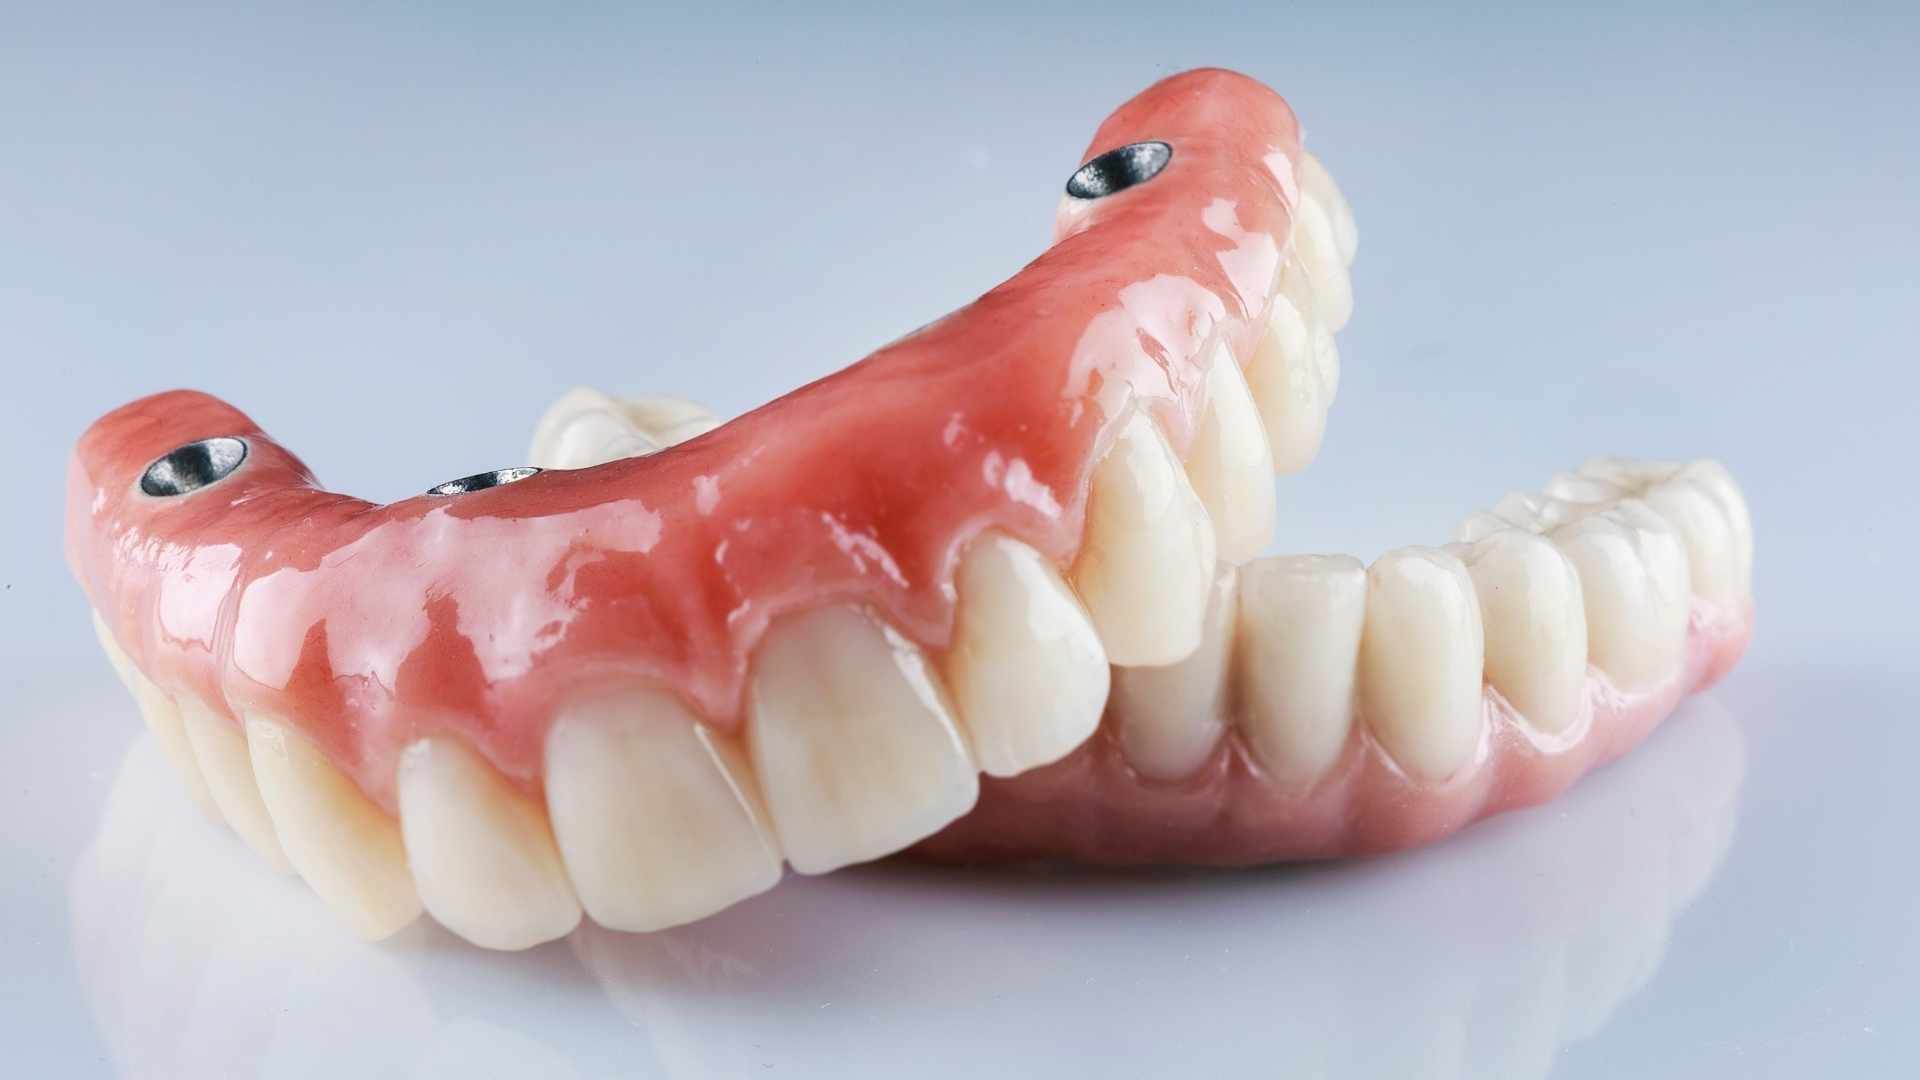 دندان پروتز متحرک آمریکایی (دندان مصنوعی کامل) (دو فک) دکتر سید علی کمونه در کرج 1